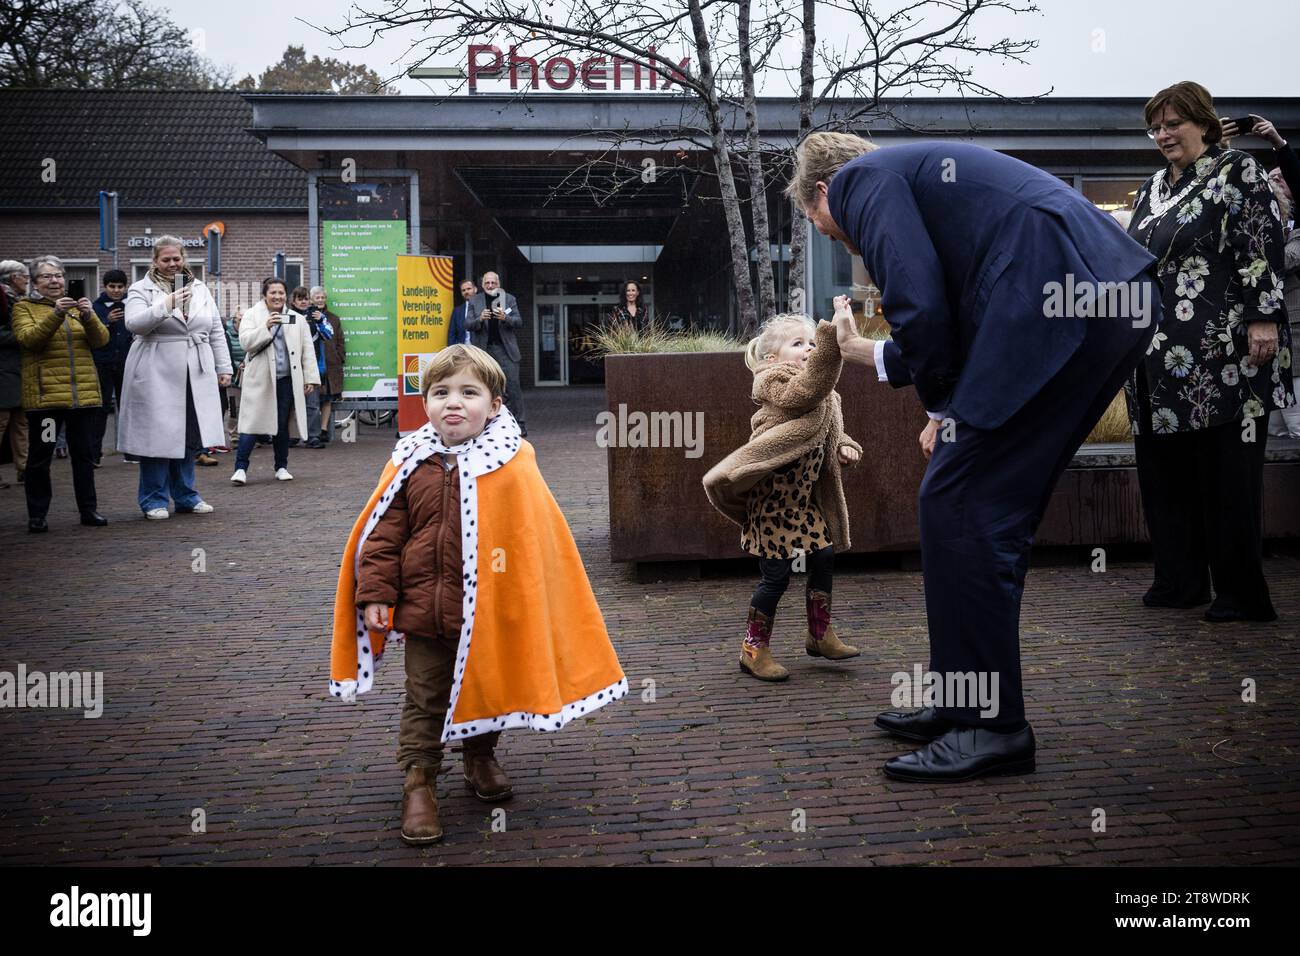 SCHAIJK - Re Willem-Alexander arriva al simposio Care nel villaggio. L'incontro si concentra sulle caratteristiche e le strozzature che circondano l'assistenza e il benessere nelle aree rurali, le iniziative dei residenti e il potere delle piccole comunità. ANP ROB ENGELAAR netherlands Out - belgium Out Foto Stock